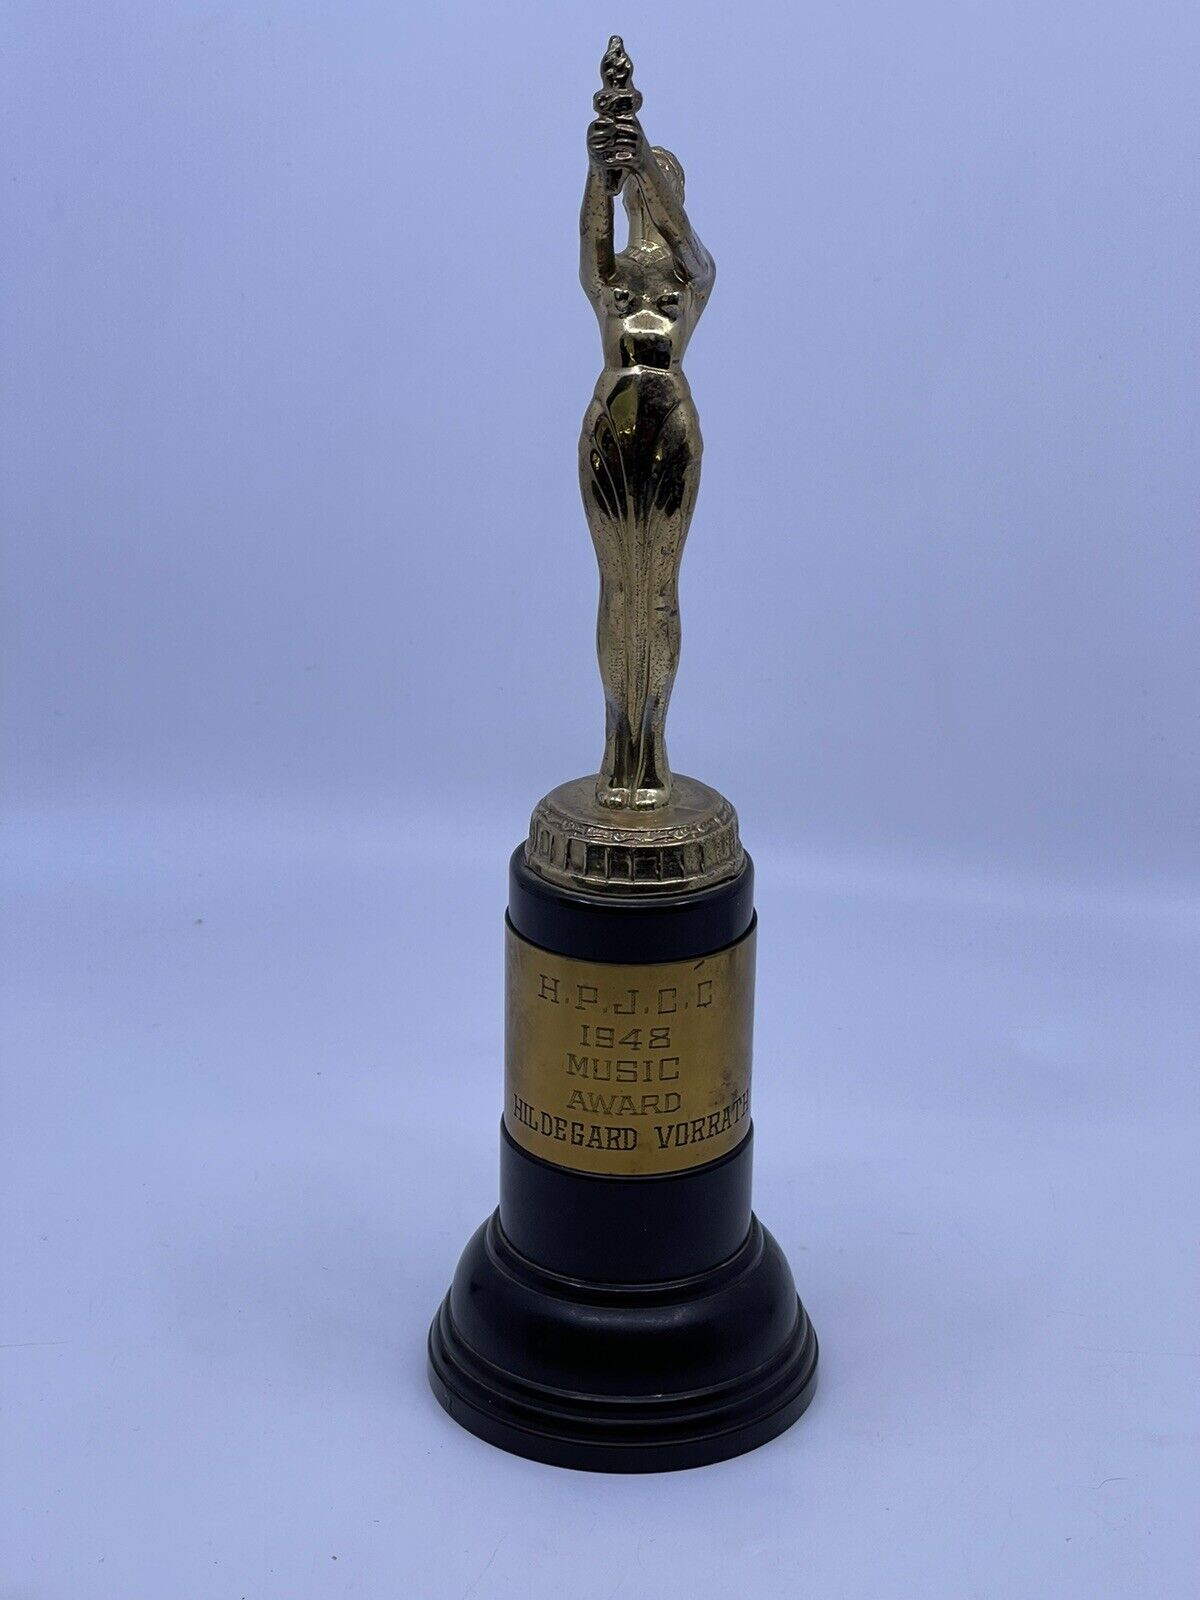 HPJCC Music Award 1948 Vintage 11” Trophy Craft Co. LA CA Hildegard Vorrath